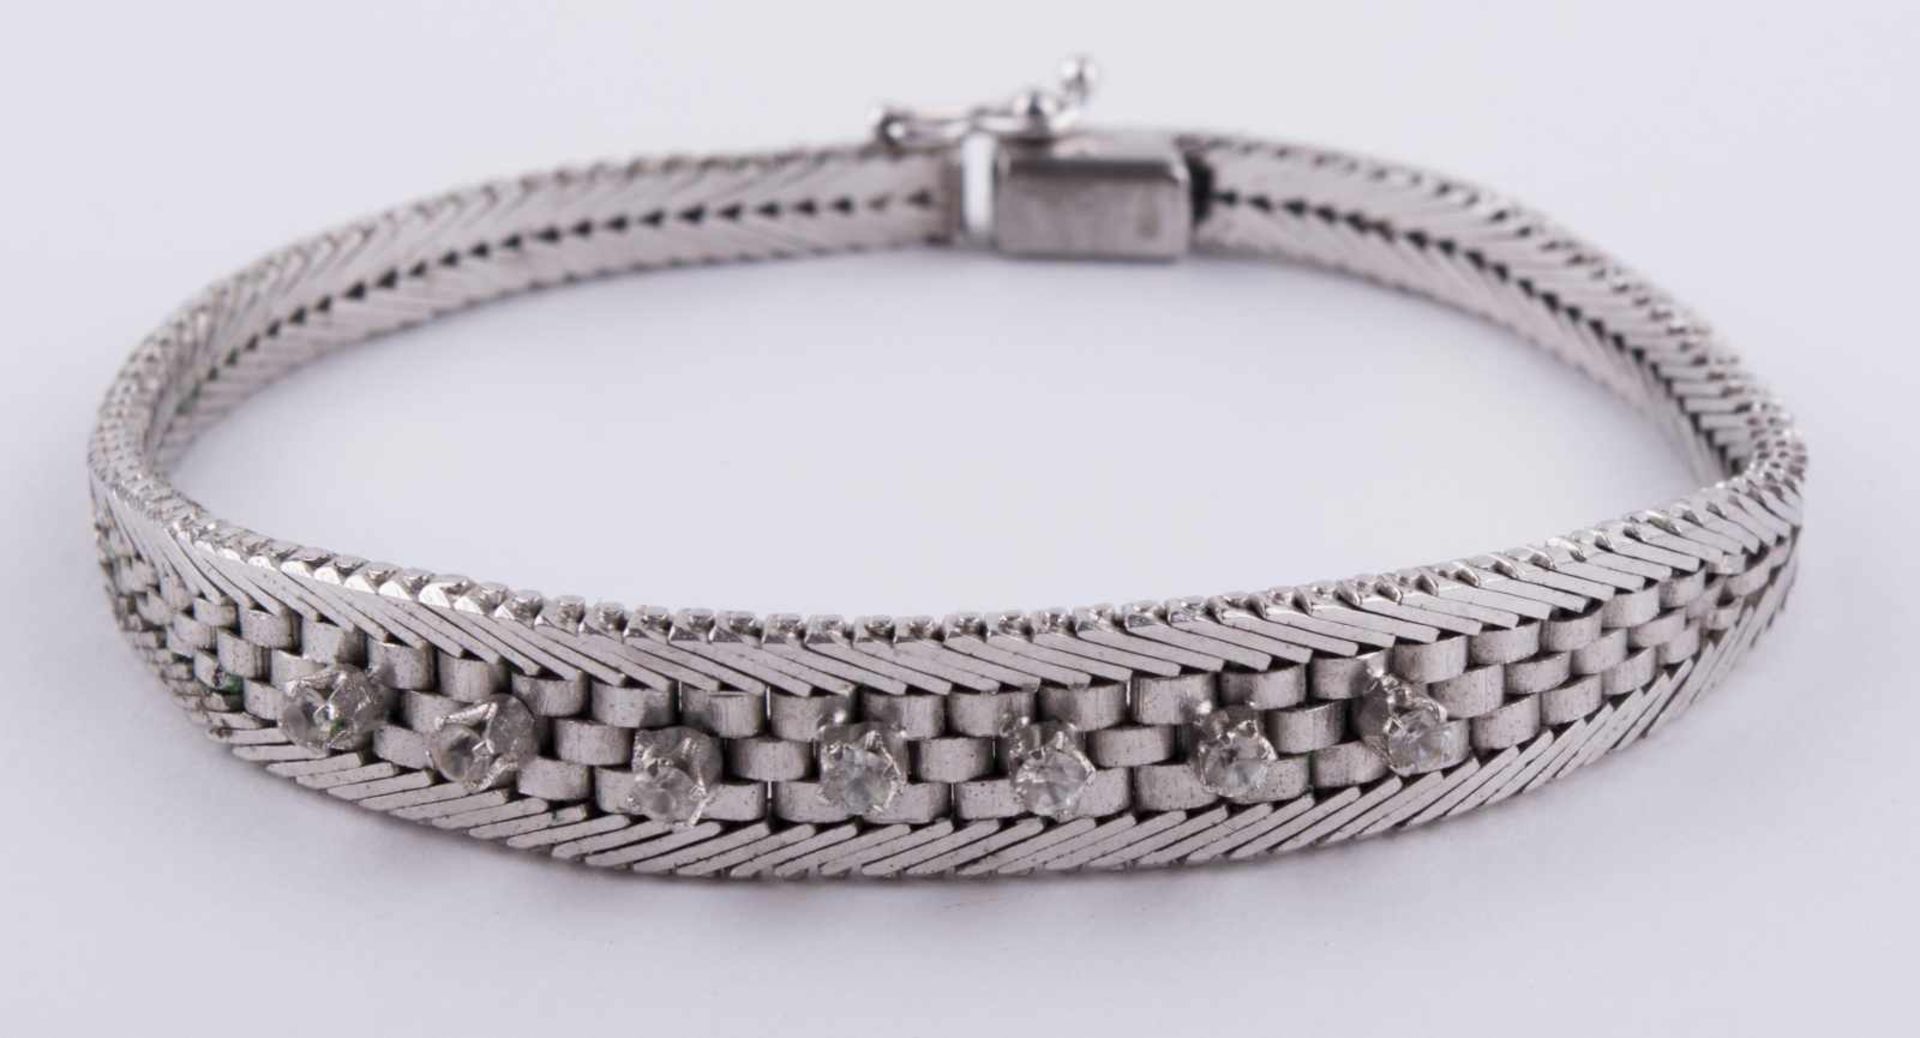 Brillant Silberarmband / Brilliant silver necklace Silber 835/000, mit 7 kleinen Brillanten, L: